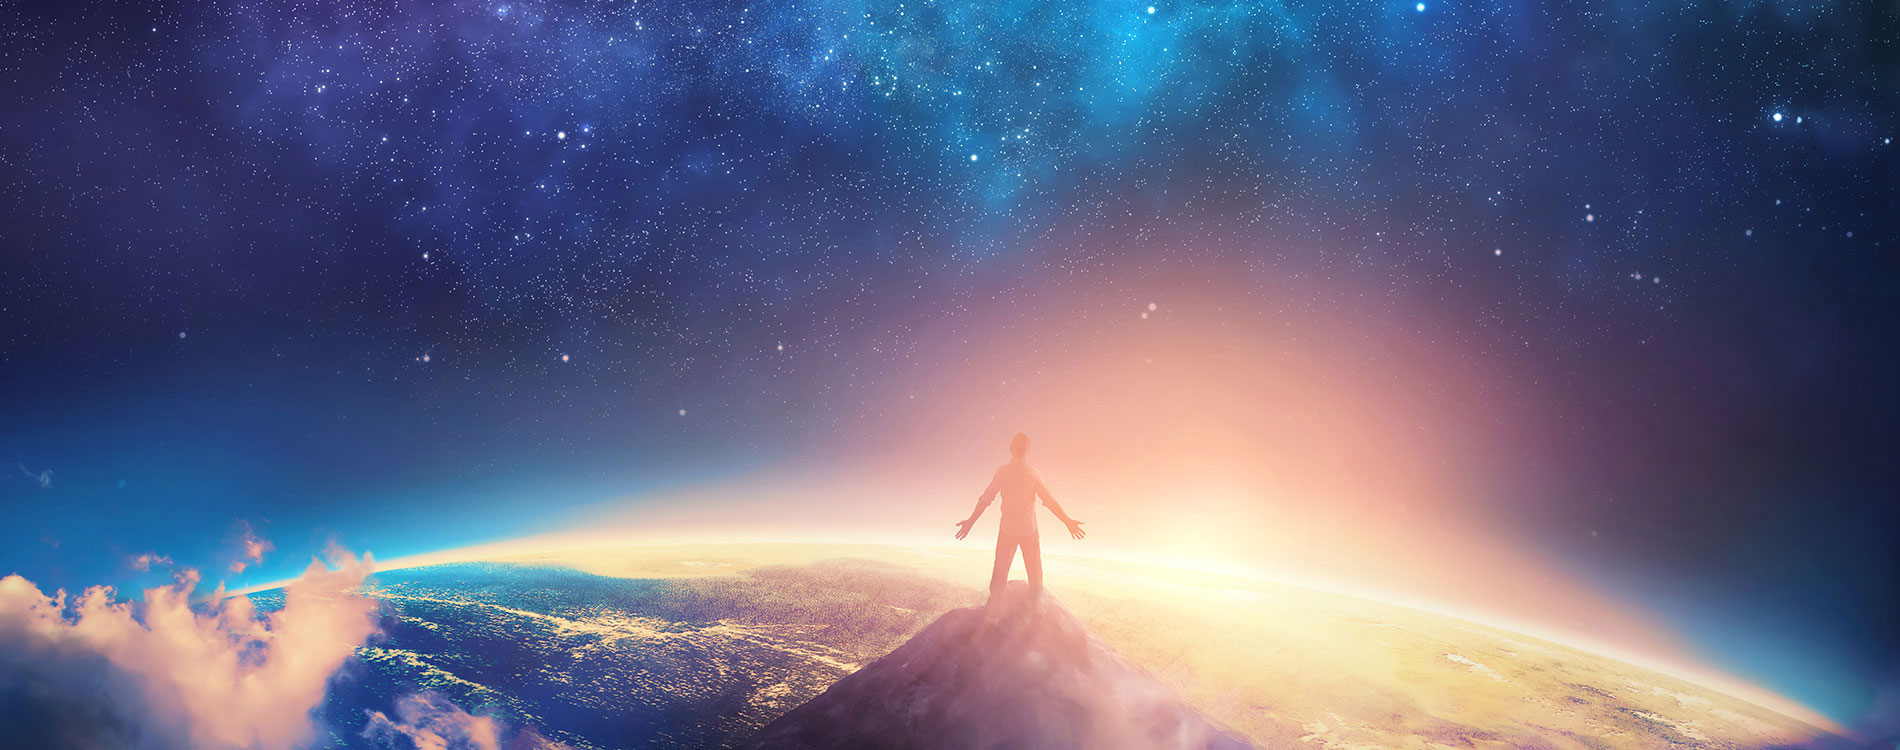 Eine einheitliche Vision für die Menschheit · Wie gestalten wir unsere Zukunft? · Kosmosophia · Spiritualität im Dienst der Menschheit und des Kosmos